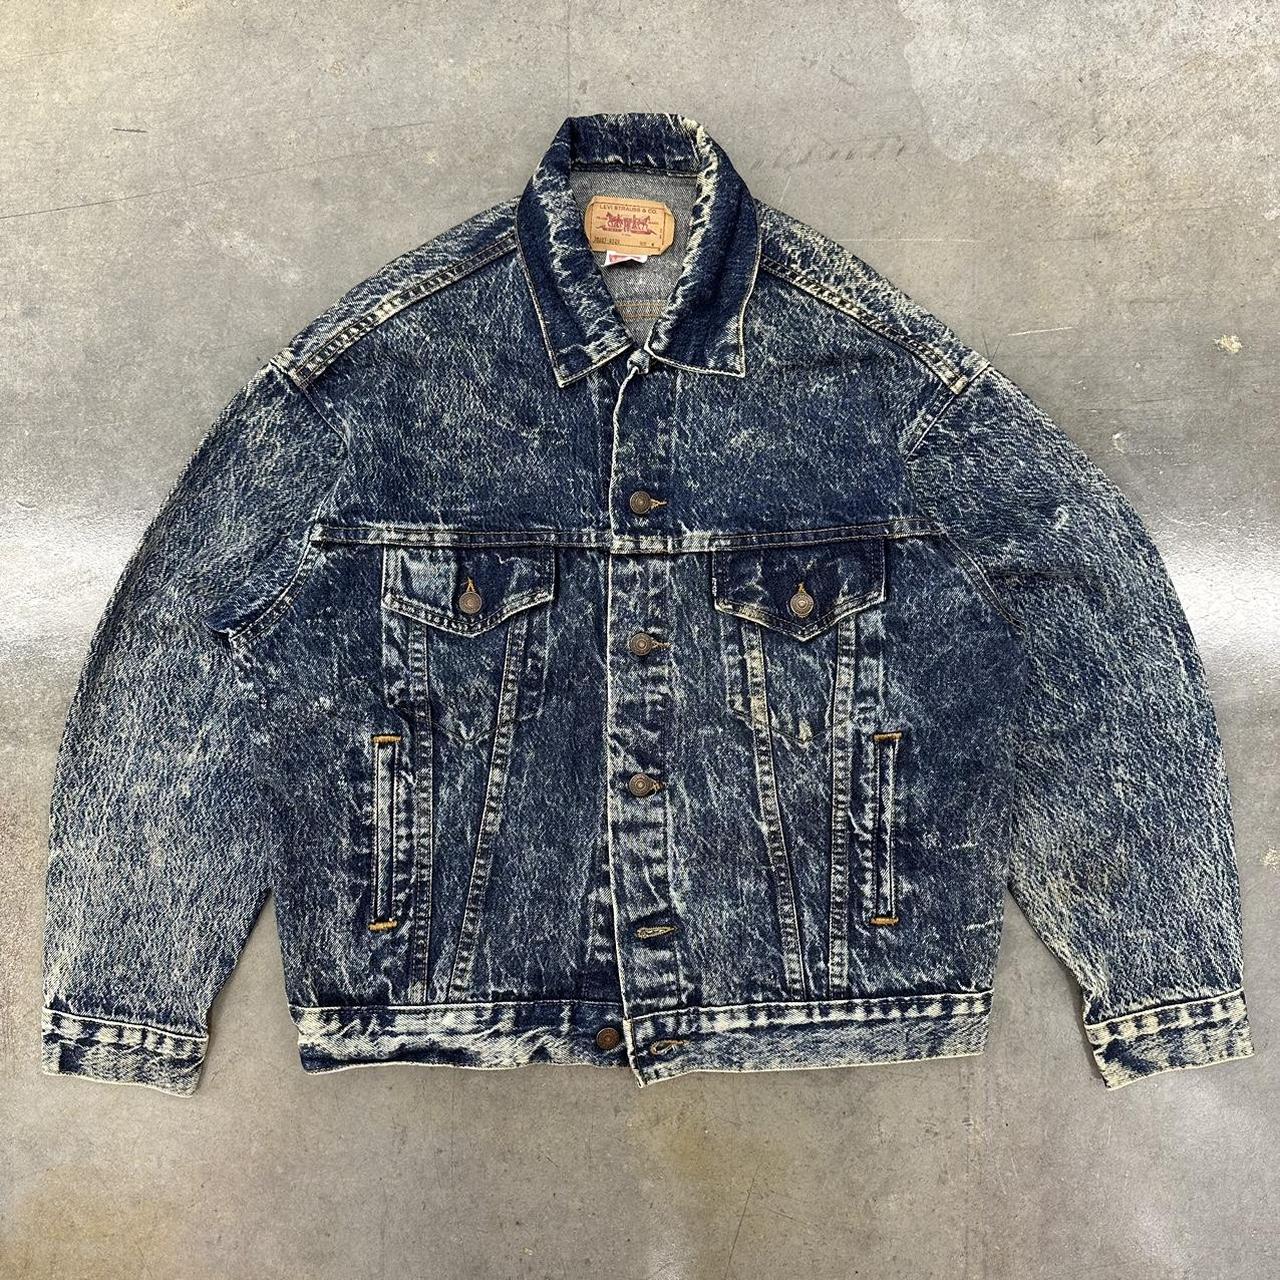 New arrivals!!! 90s bleach design denim jacket For Men #kinsella #tokyo  #harajuku #キンセラ #原宿 #東京 #古着屋 #fashion #vintage #80s #90s | Instagram